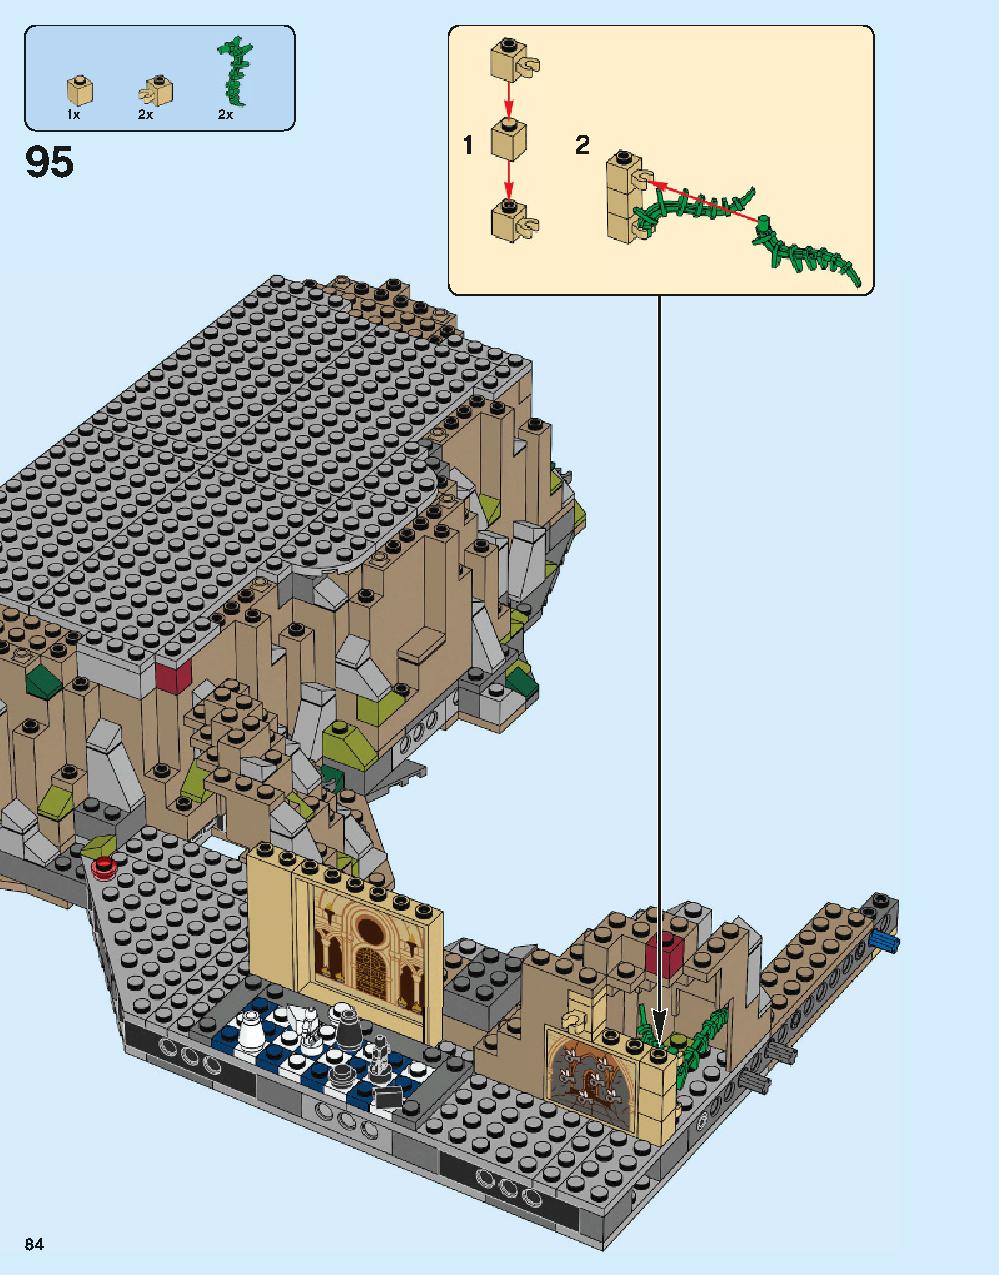 ホグワーツ城 71043 レゴの商品情報 レゴの説明書・組立方法 84 page